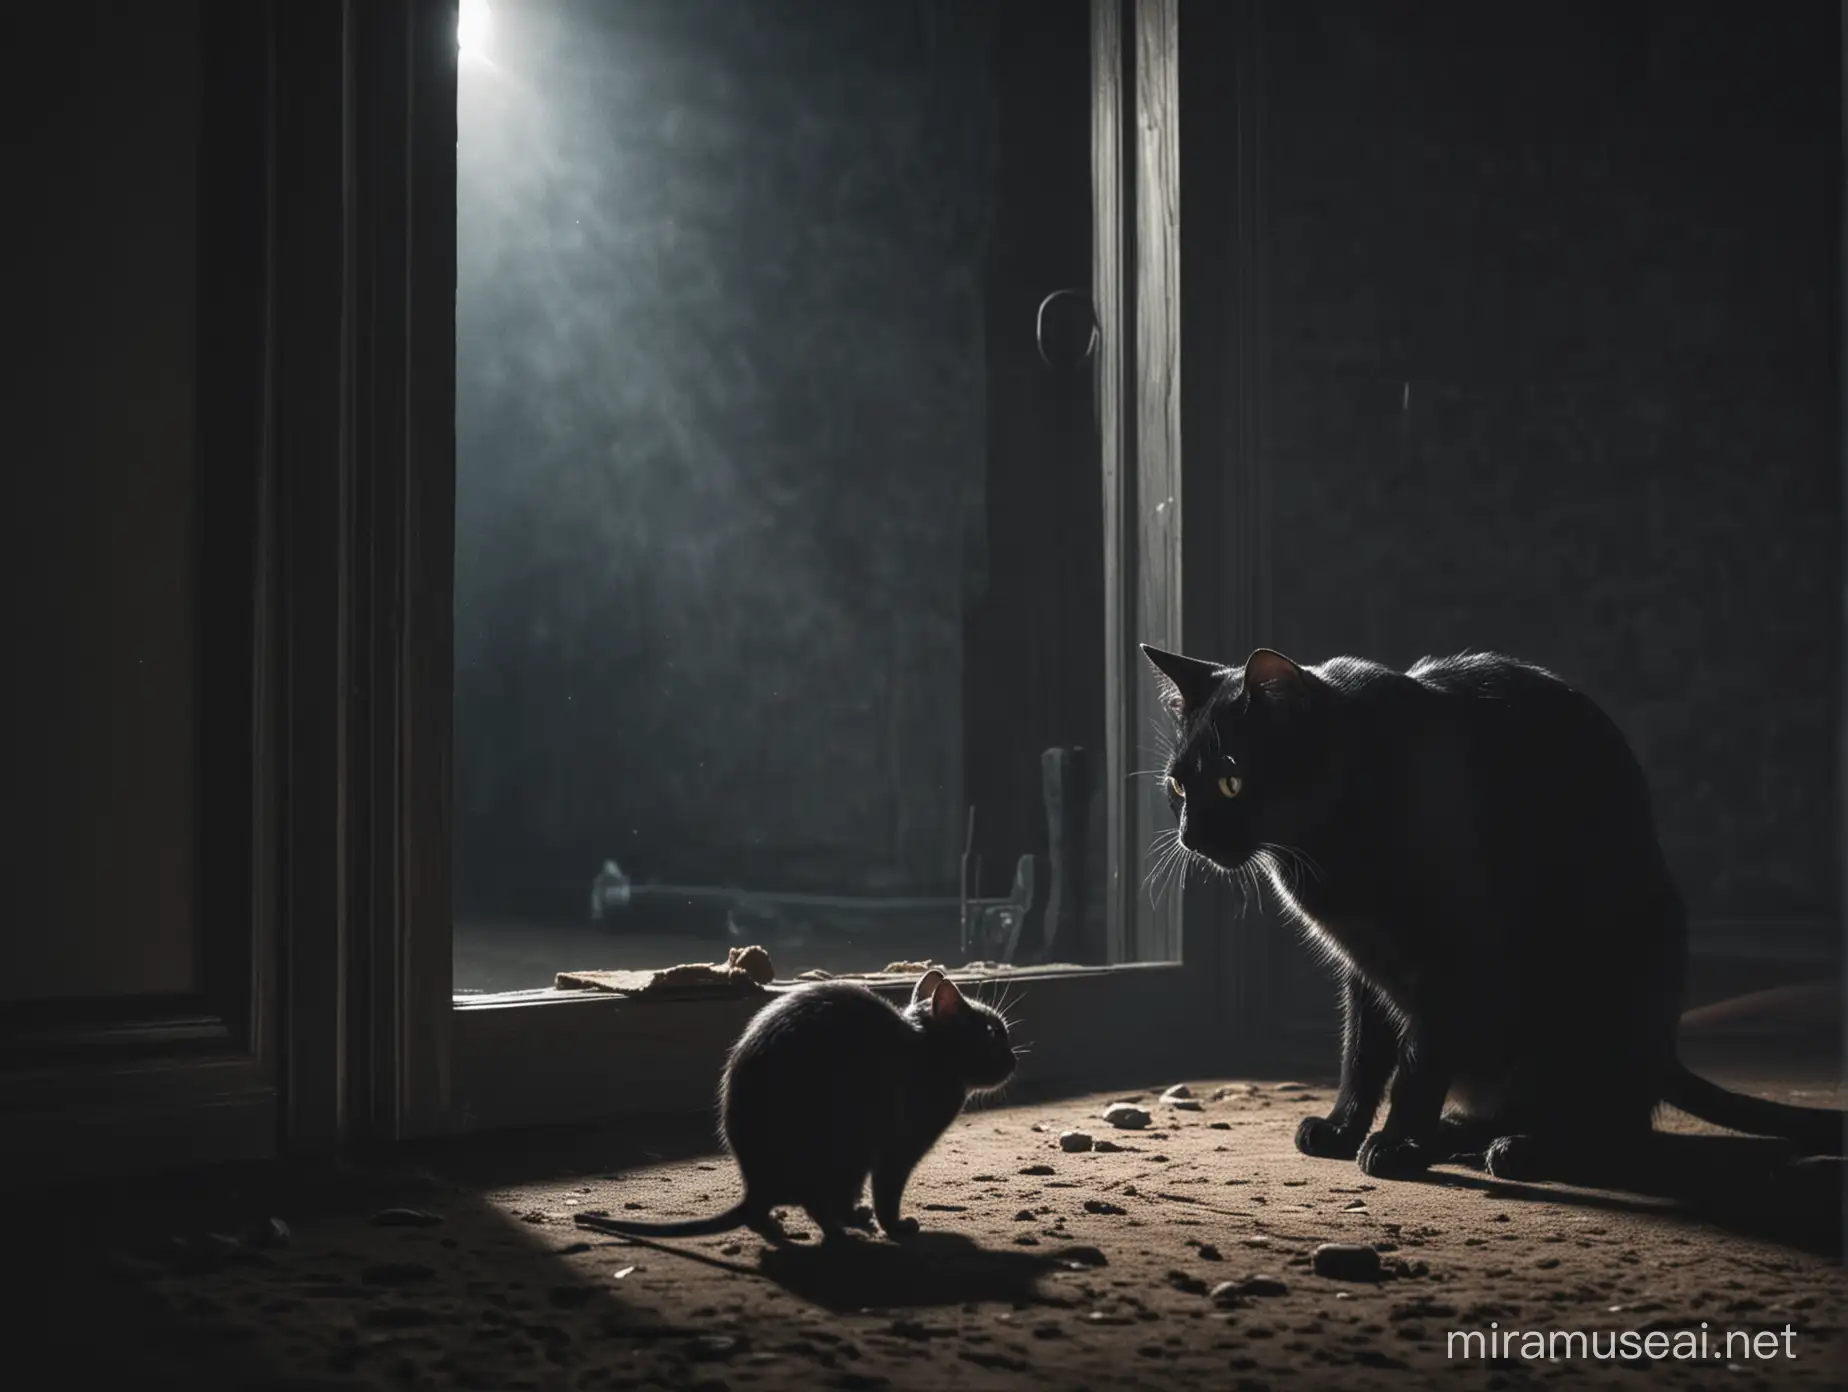 Un gato negro viendo a un ratón dentro de una habitación oscura en la noche.